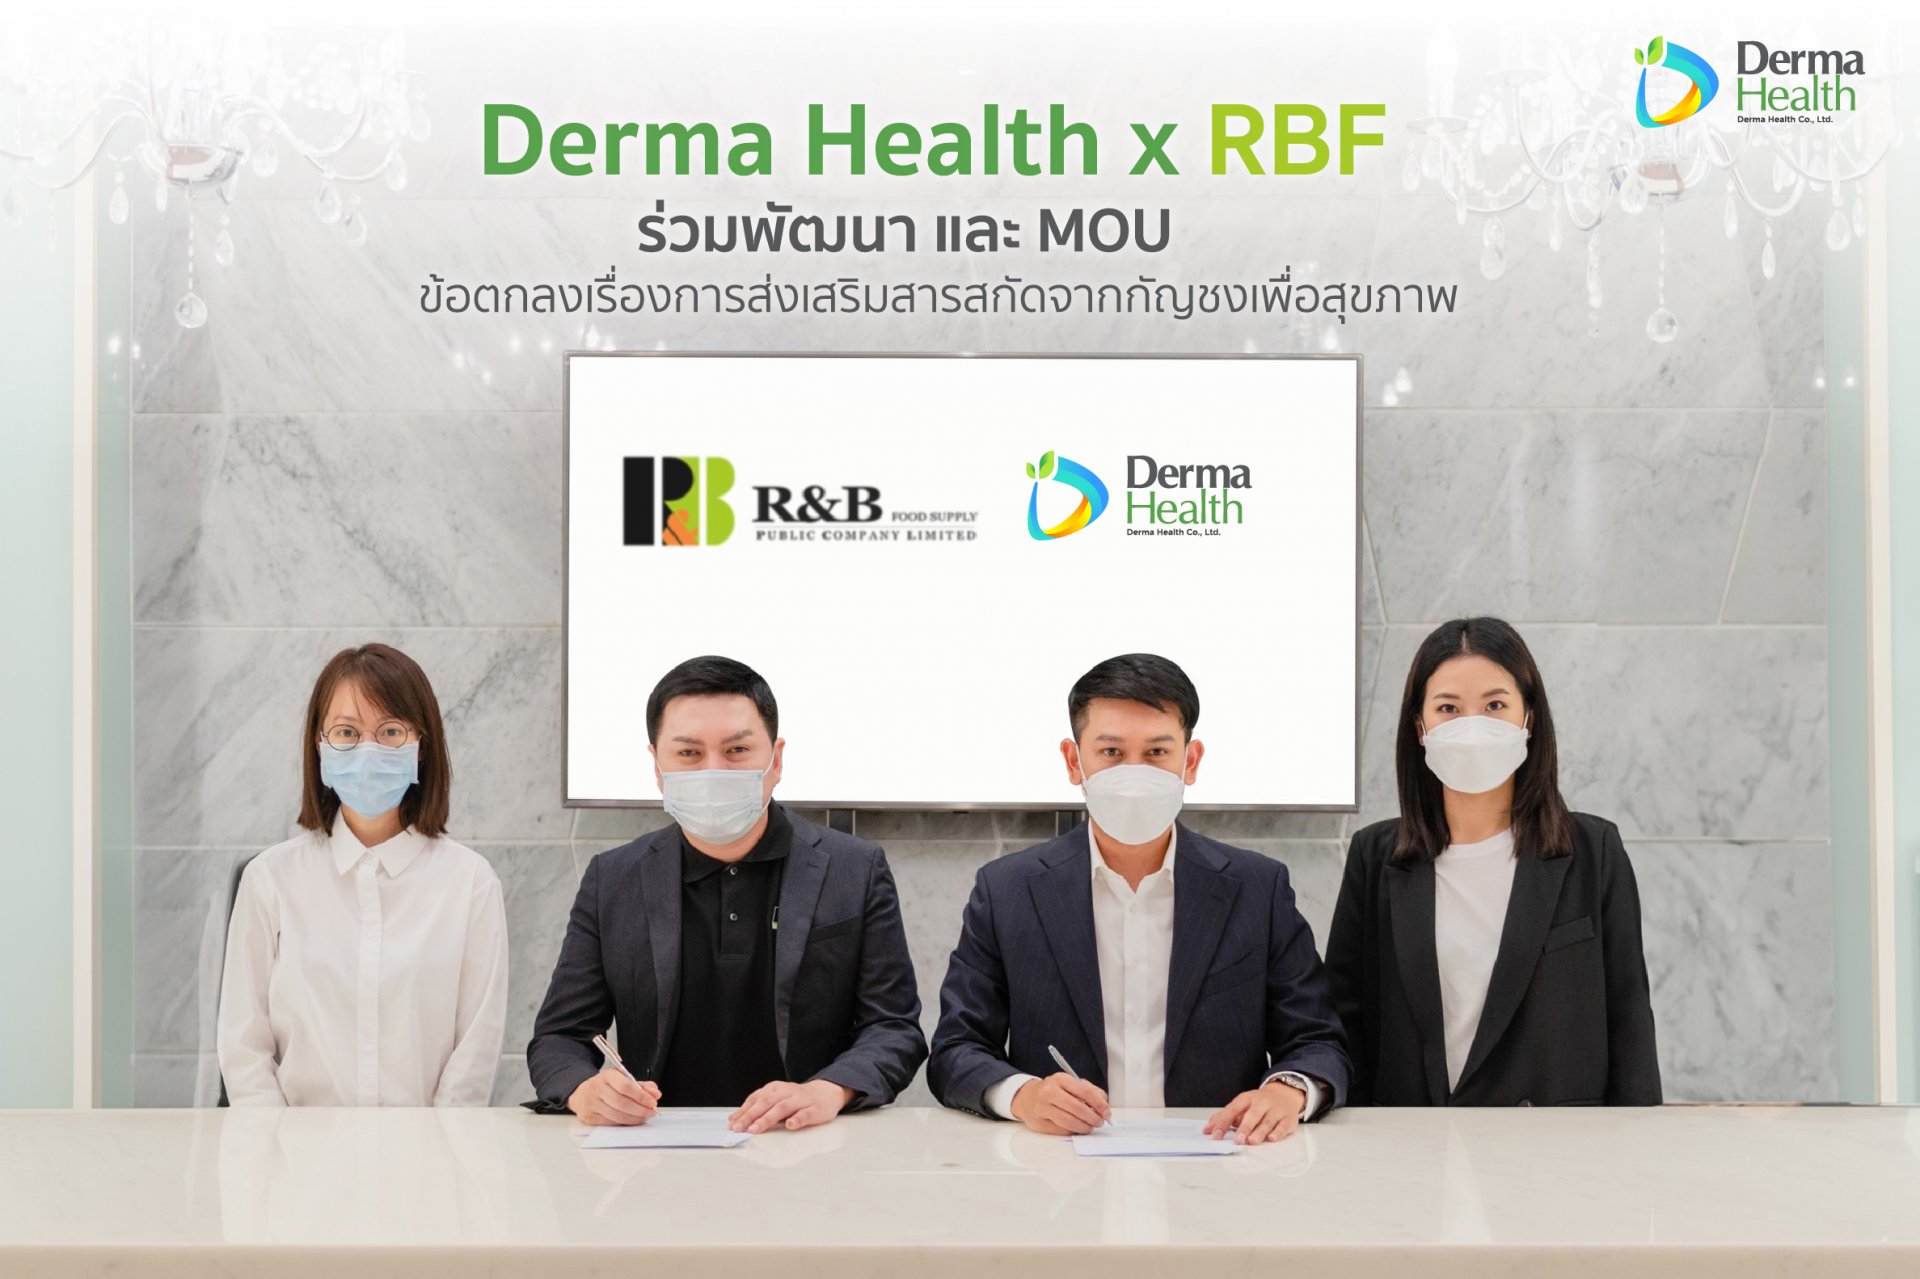 Derma Health x RBF ร่วมพัฒนา และ MOU ข้อตกลงเรื่องการส่งเสริมสารสกัดจากกัญชงเพื่อสุขภาพ